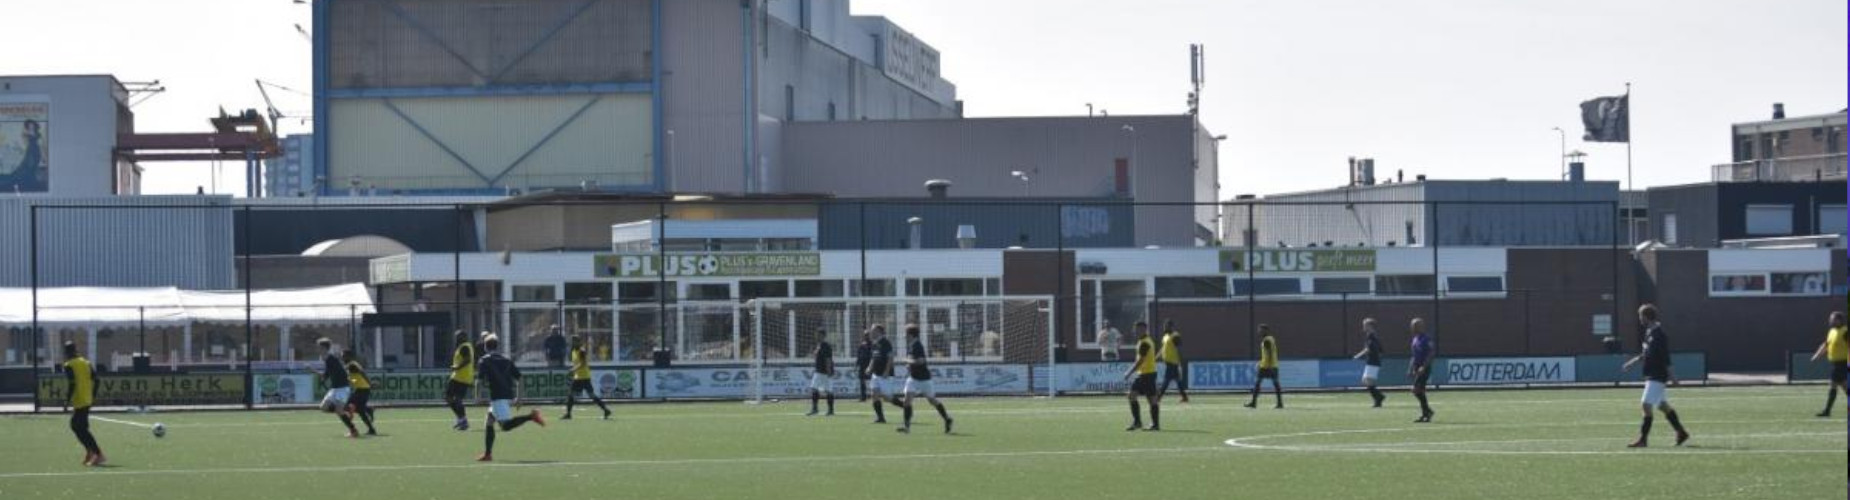 Banner - Voetbalvereniging CKC - Rotterdam